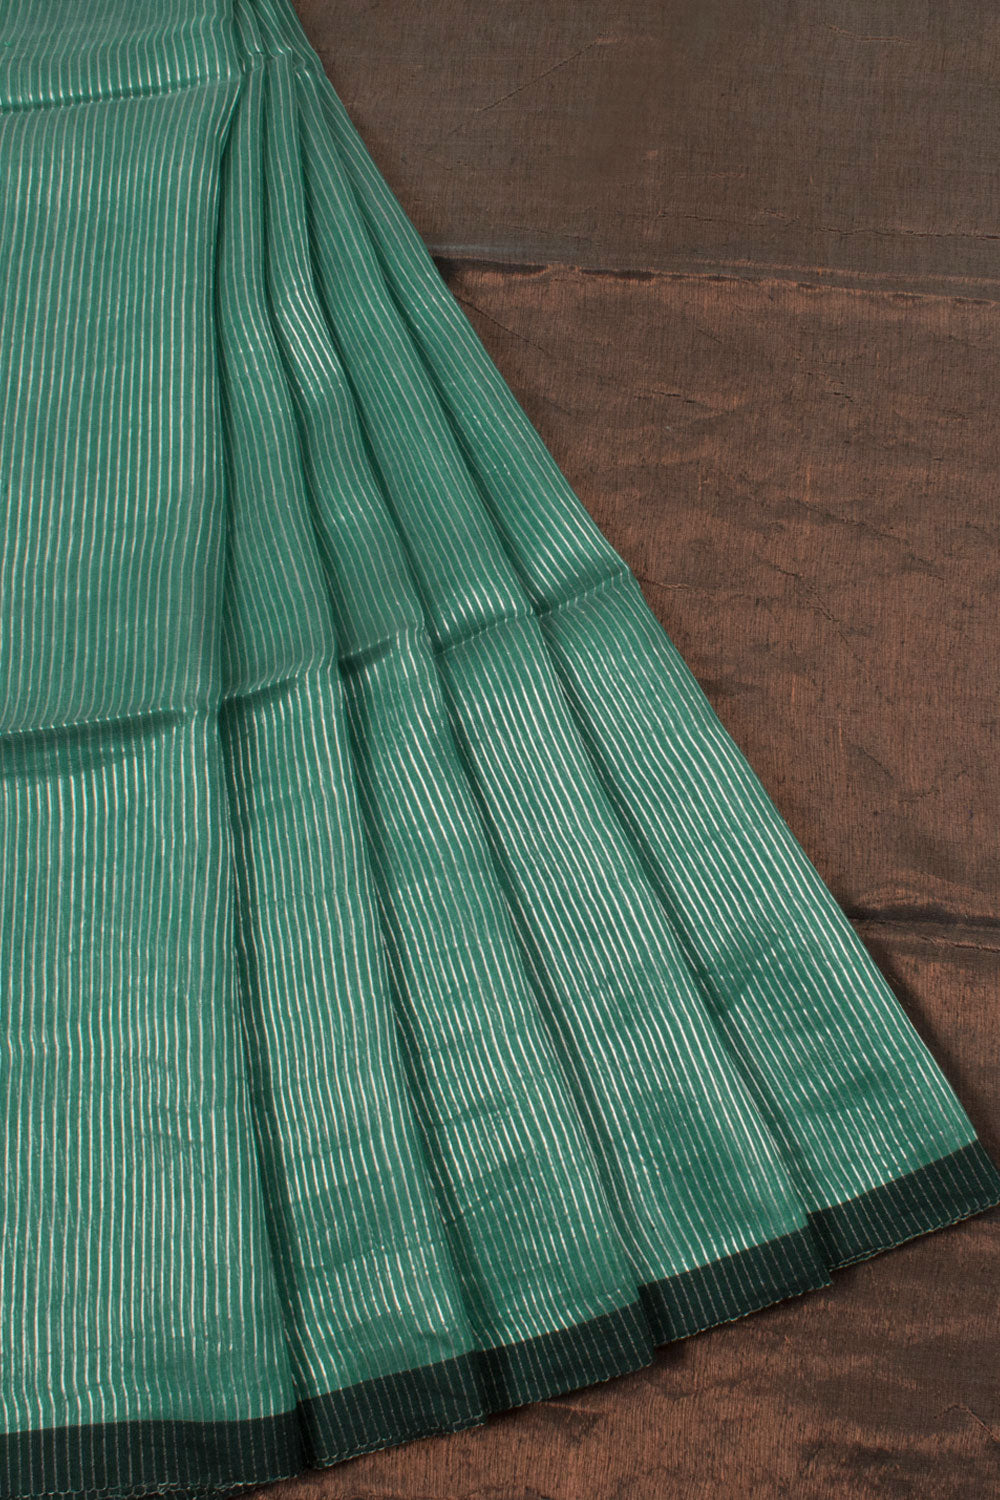 Handloom Linen Silk Saree with Silver Zari Stripes Design and Copper Tone Zari Pallu